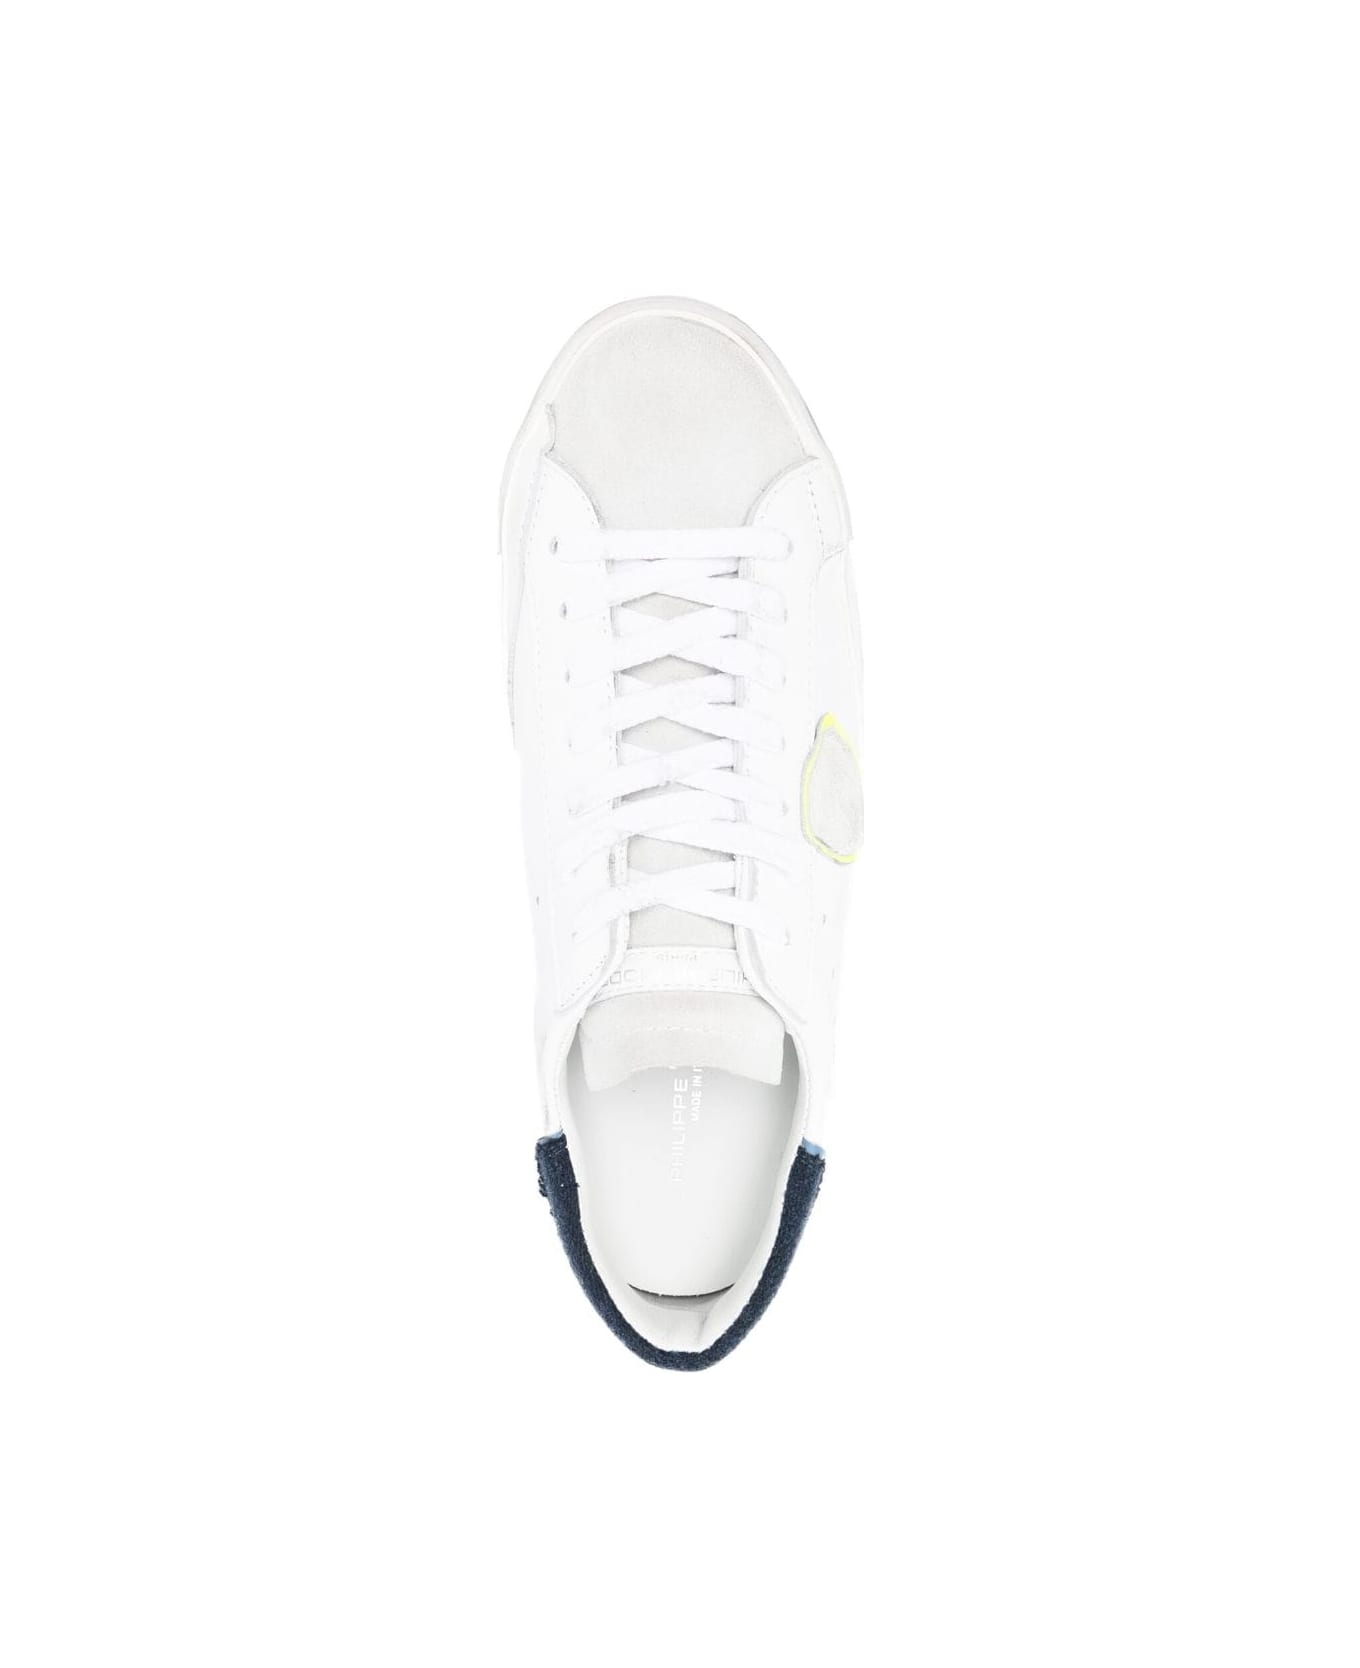 Philippe Model Prsx Low Man Sneakers - Veau Laine Blanc Bleu